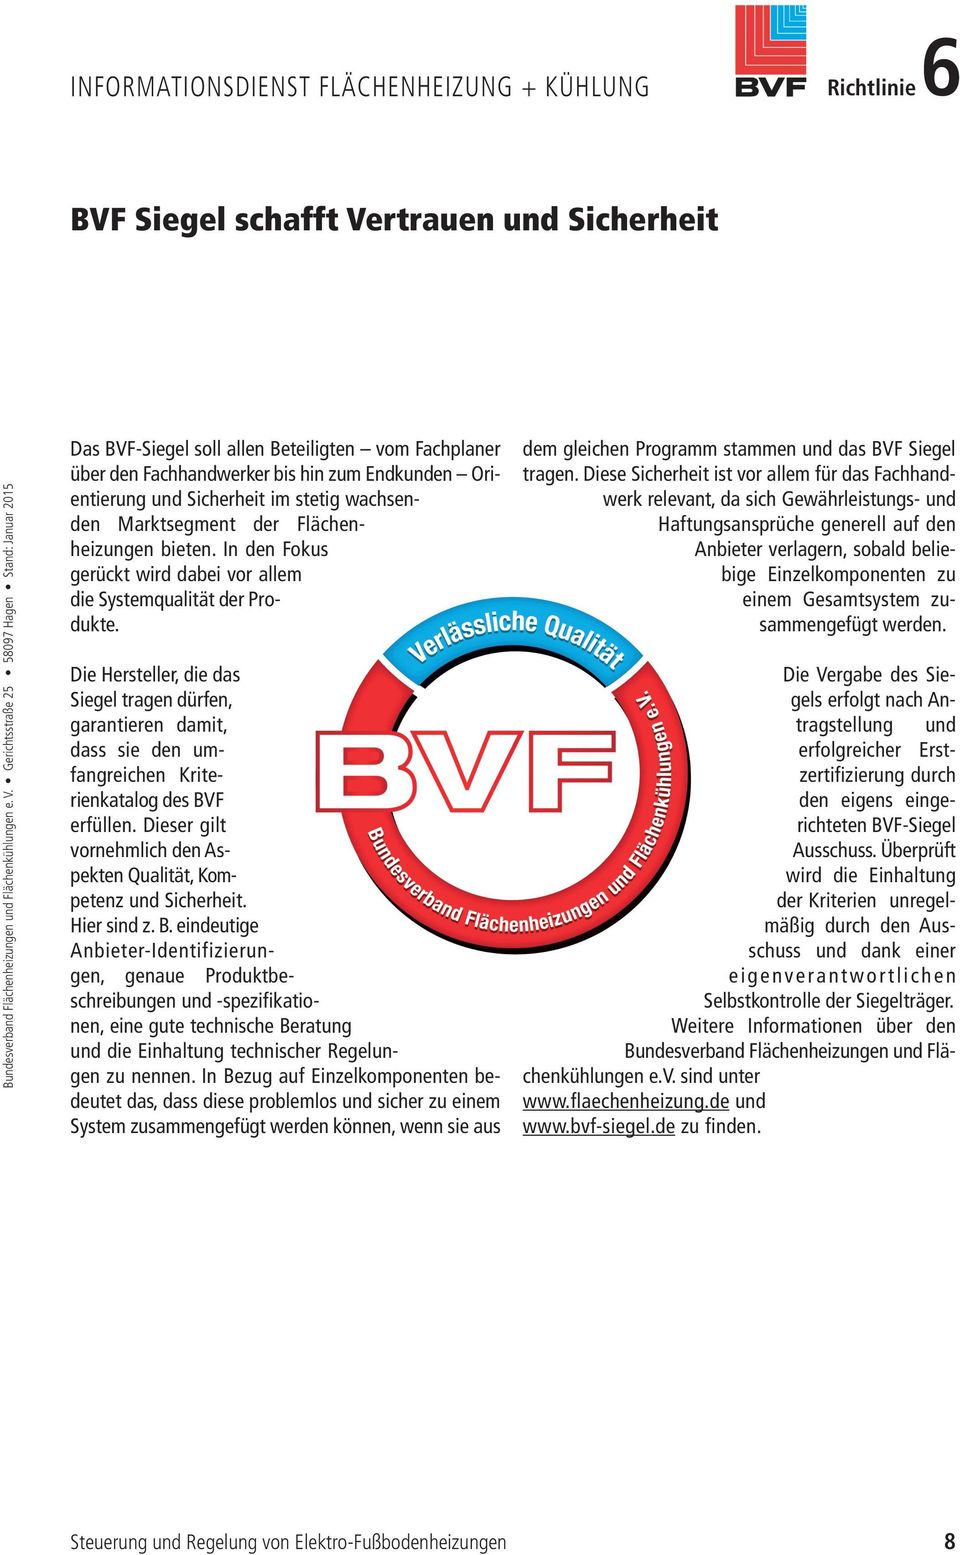 Die Hersteller, die das Siegel tragen dürfen, garantieren damit, dass sie den umfangreichen Kriterienkatalog des BVF erfüllen. Dieser gilt vornehmlich den Aspekten Qualität, Kompetenz und Sicherheit.